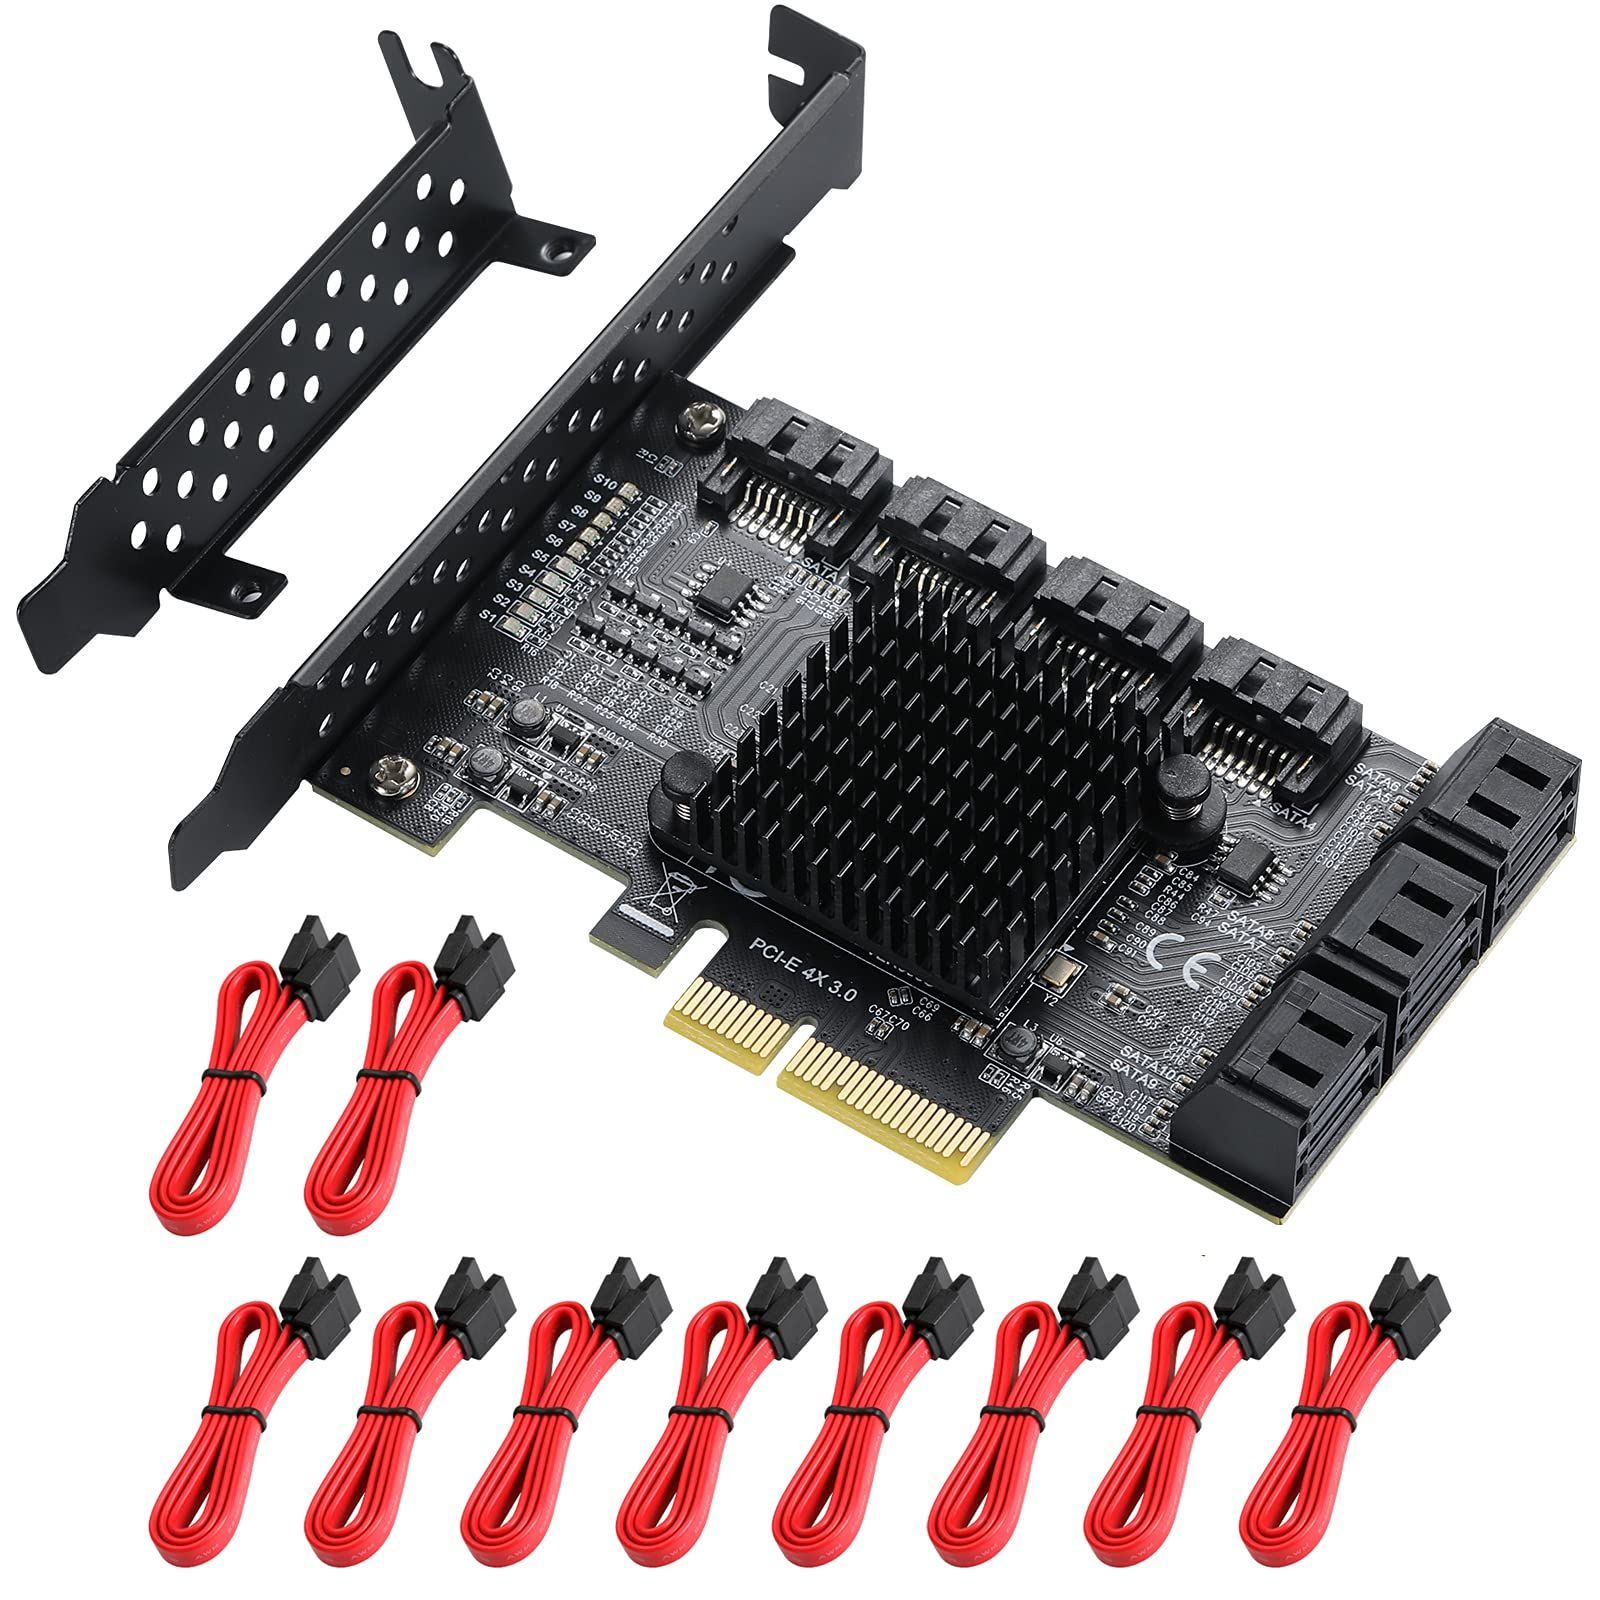 PCIe SATAカード6ポート、6 Gbps SATAコントローラー拡張カード、PCI